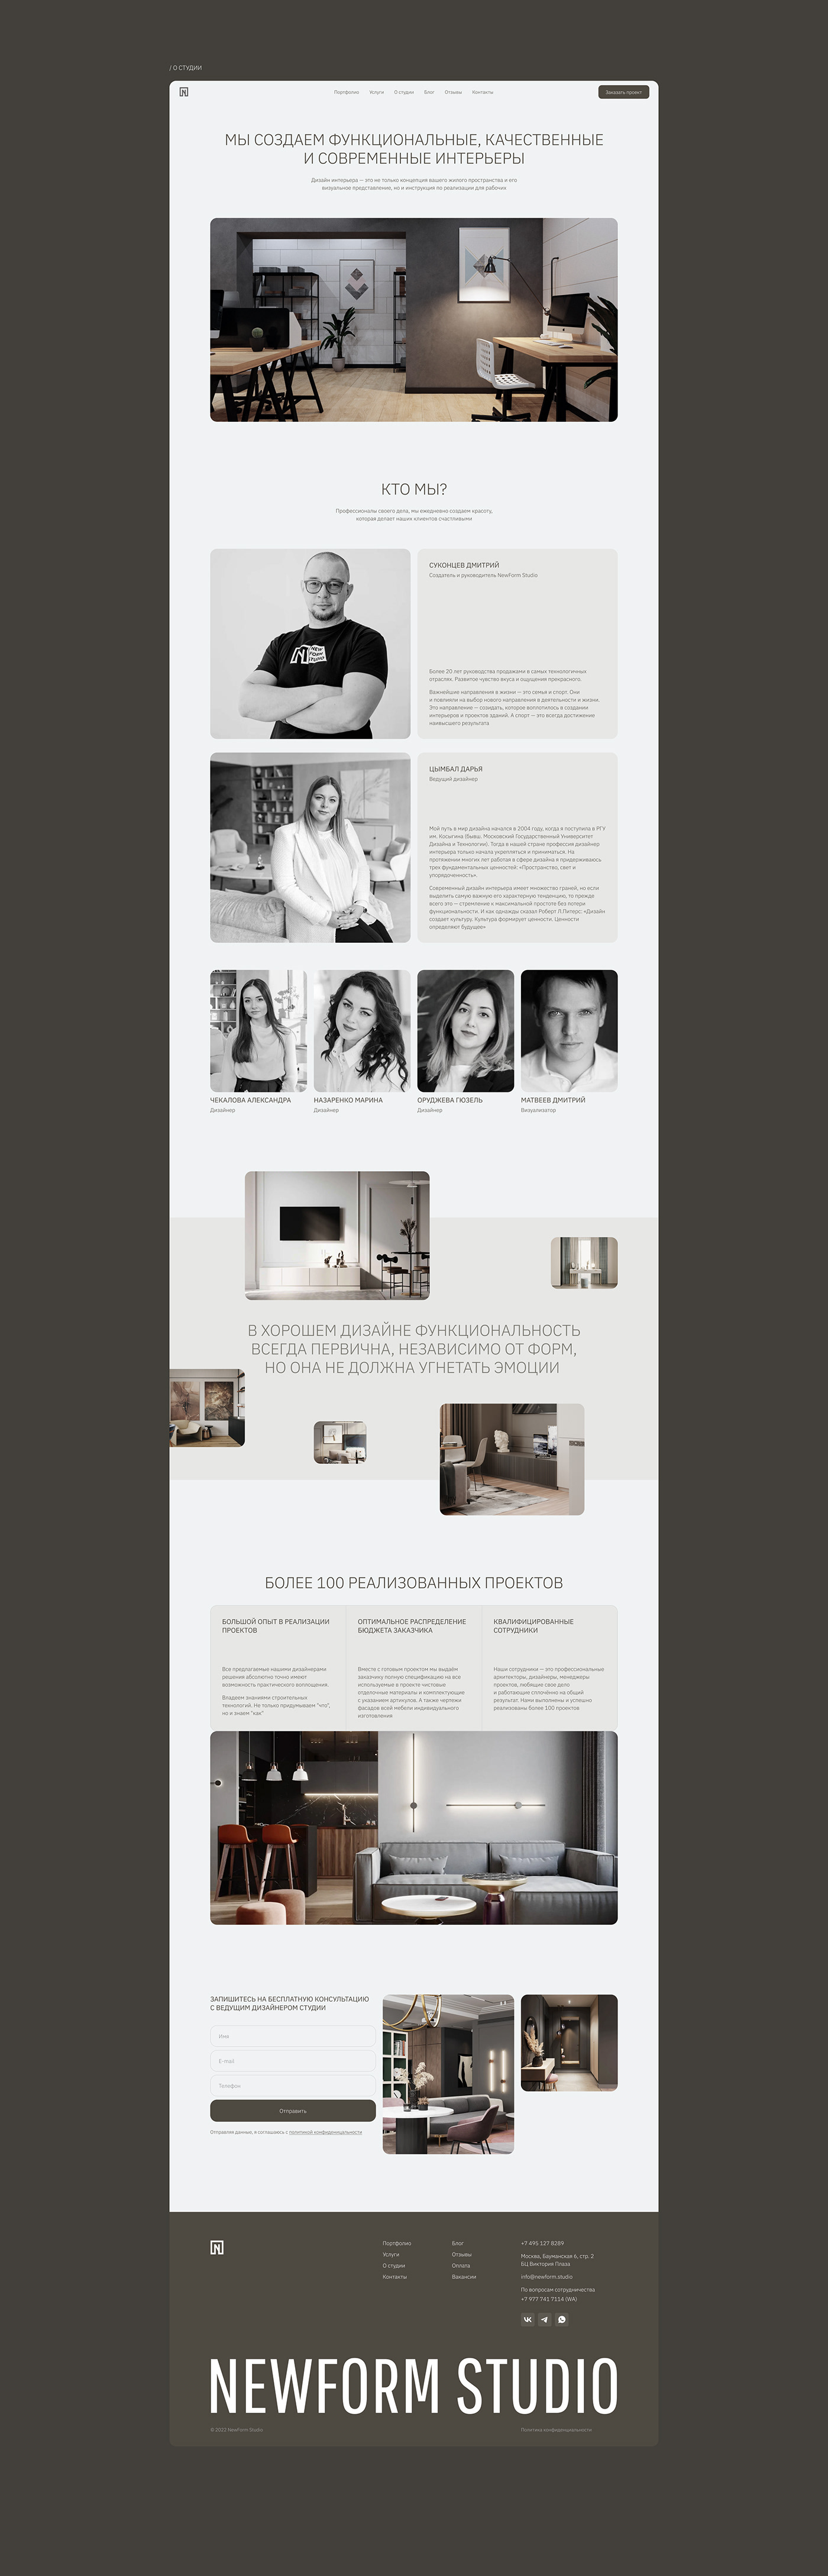 interior design  minimal interior design website UI/UX ui design design studio Website architecture design Architecture website portfolio